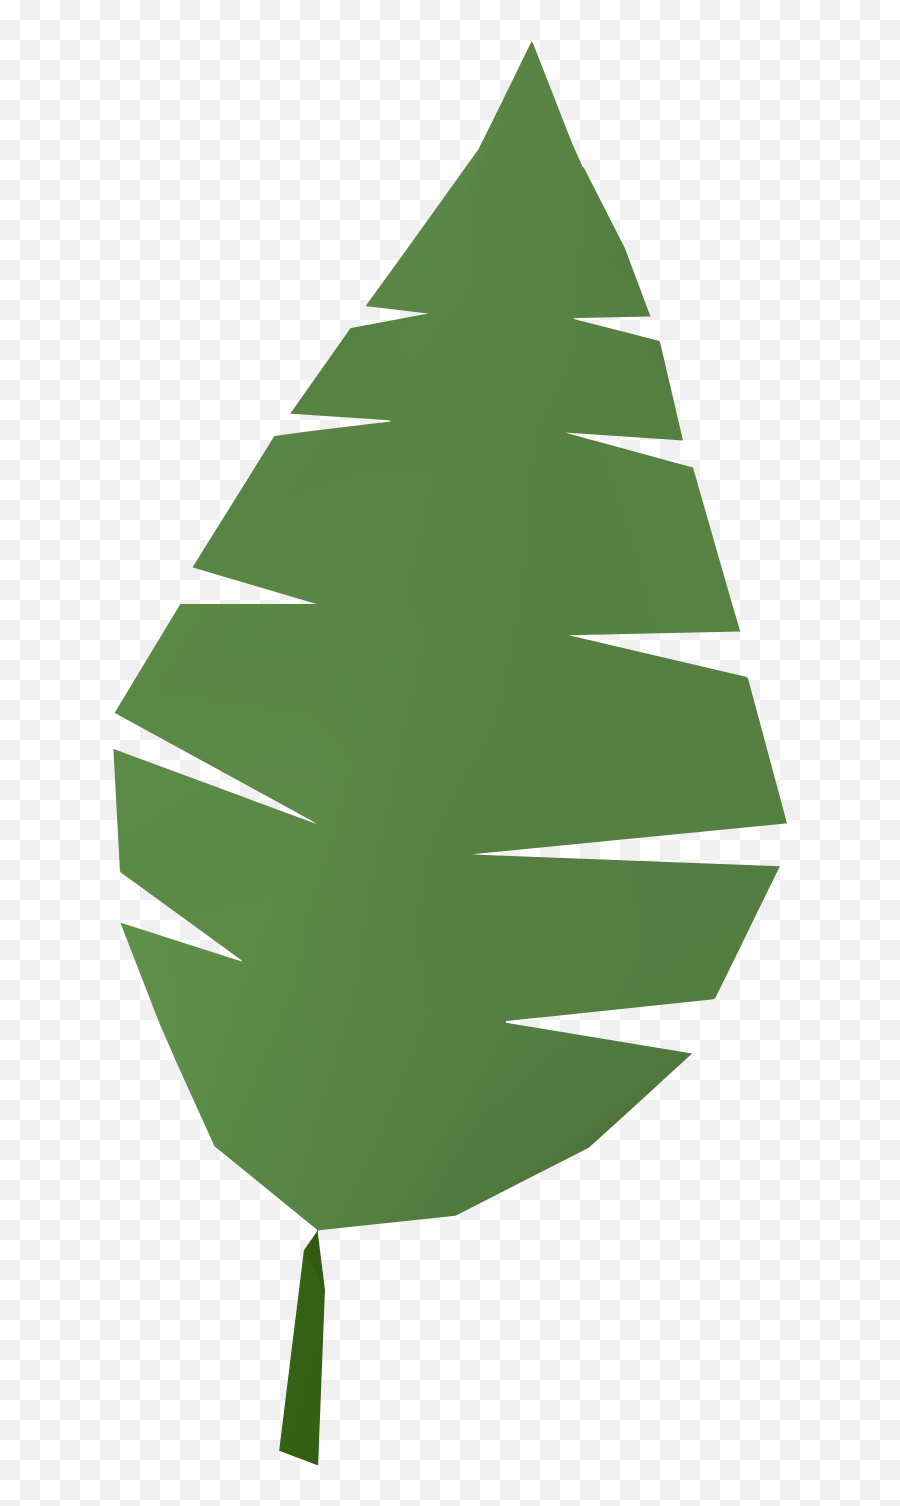 Jungle Clipart Leafy Jungle Leafy - Palm Branch Palm Leaf Clipart Free Emoji,Jungle Leaves Png